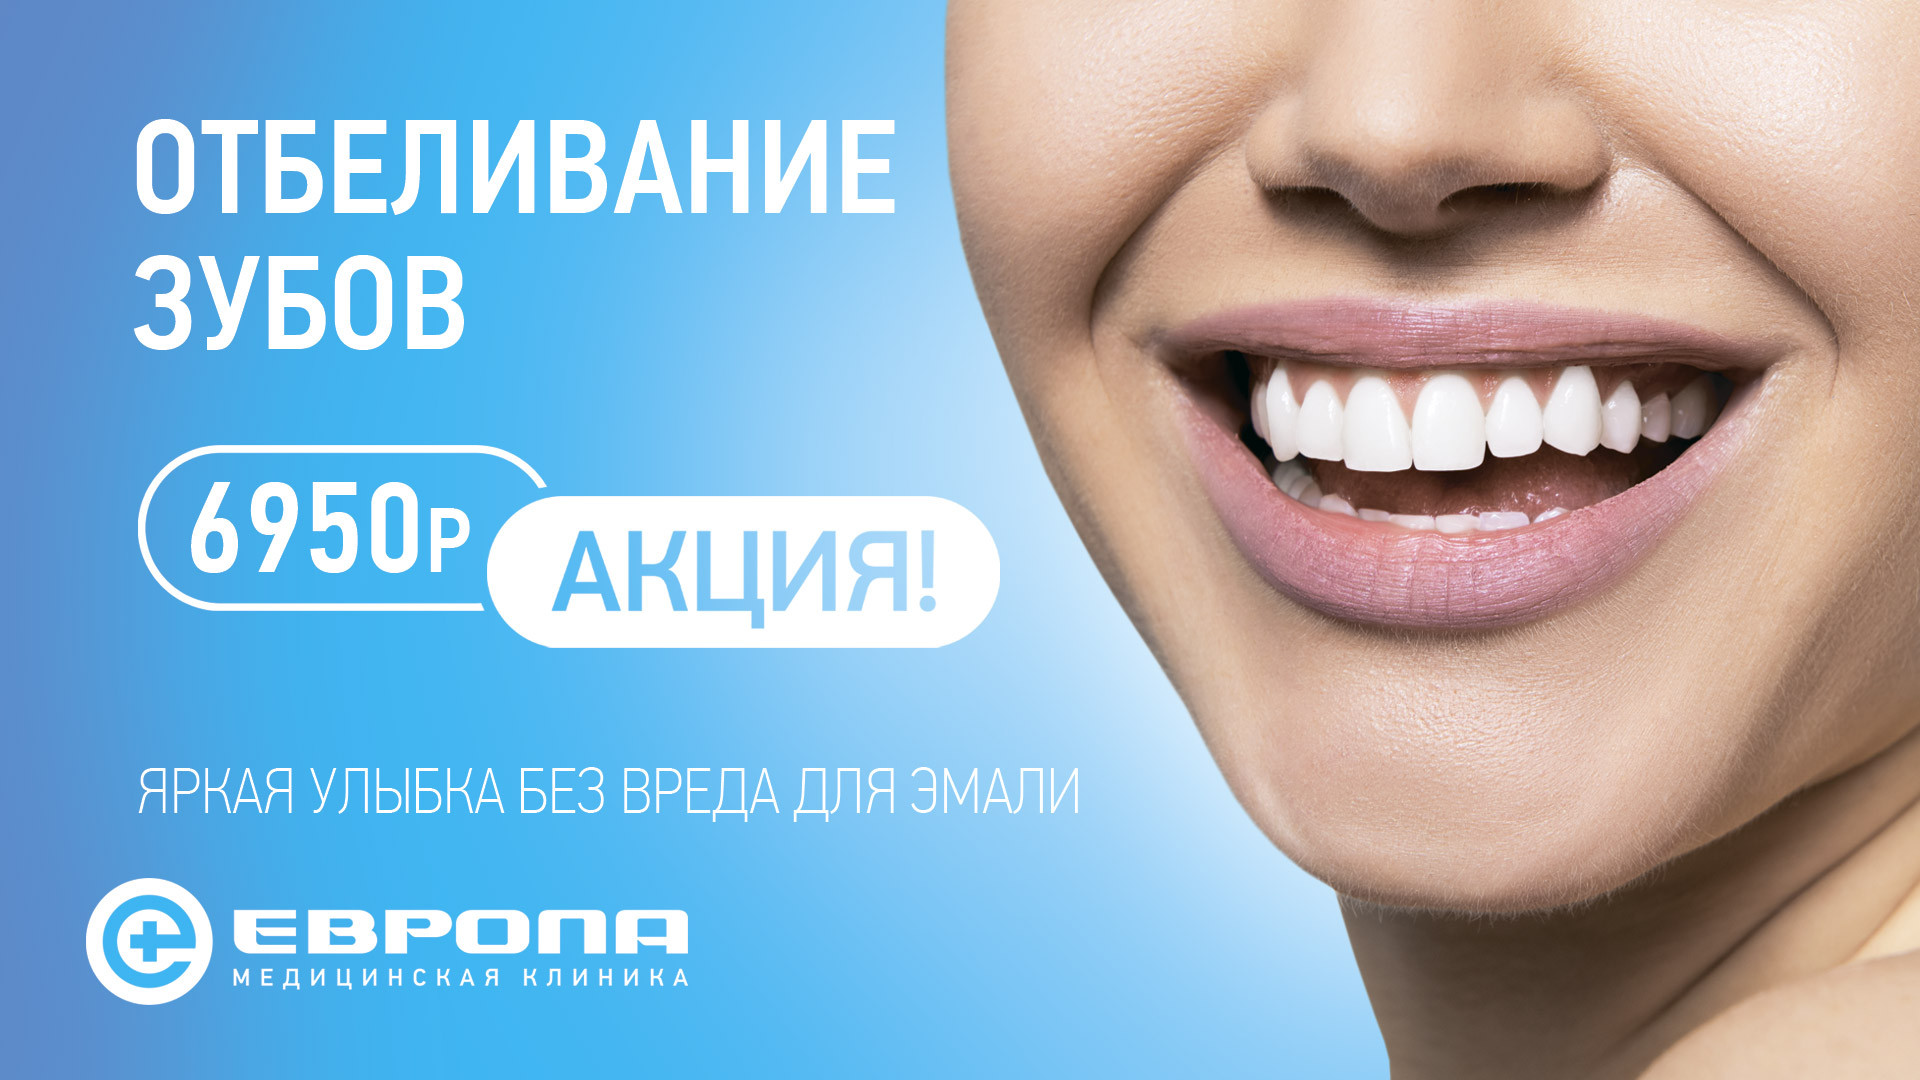 Чистка зубов казань акции. Реклама стоматологии. Девушка с красивыми зубами. Стоматология баннер. Отбеливание зубов акция.